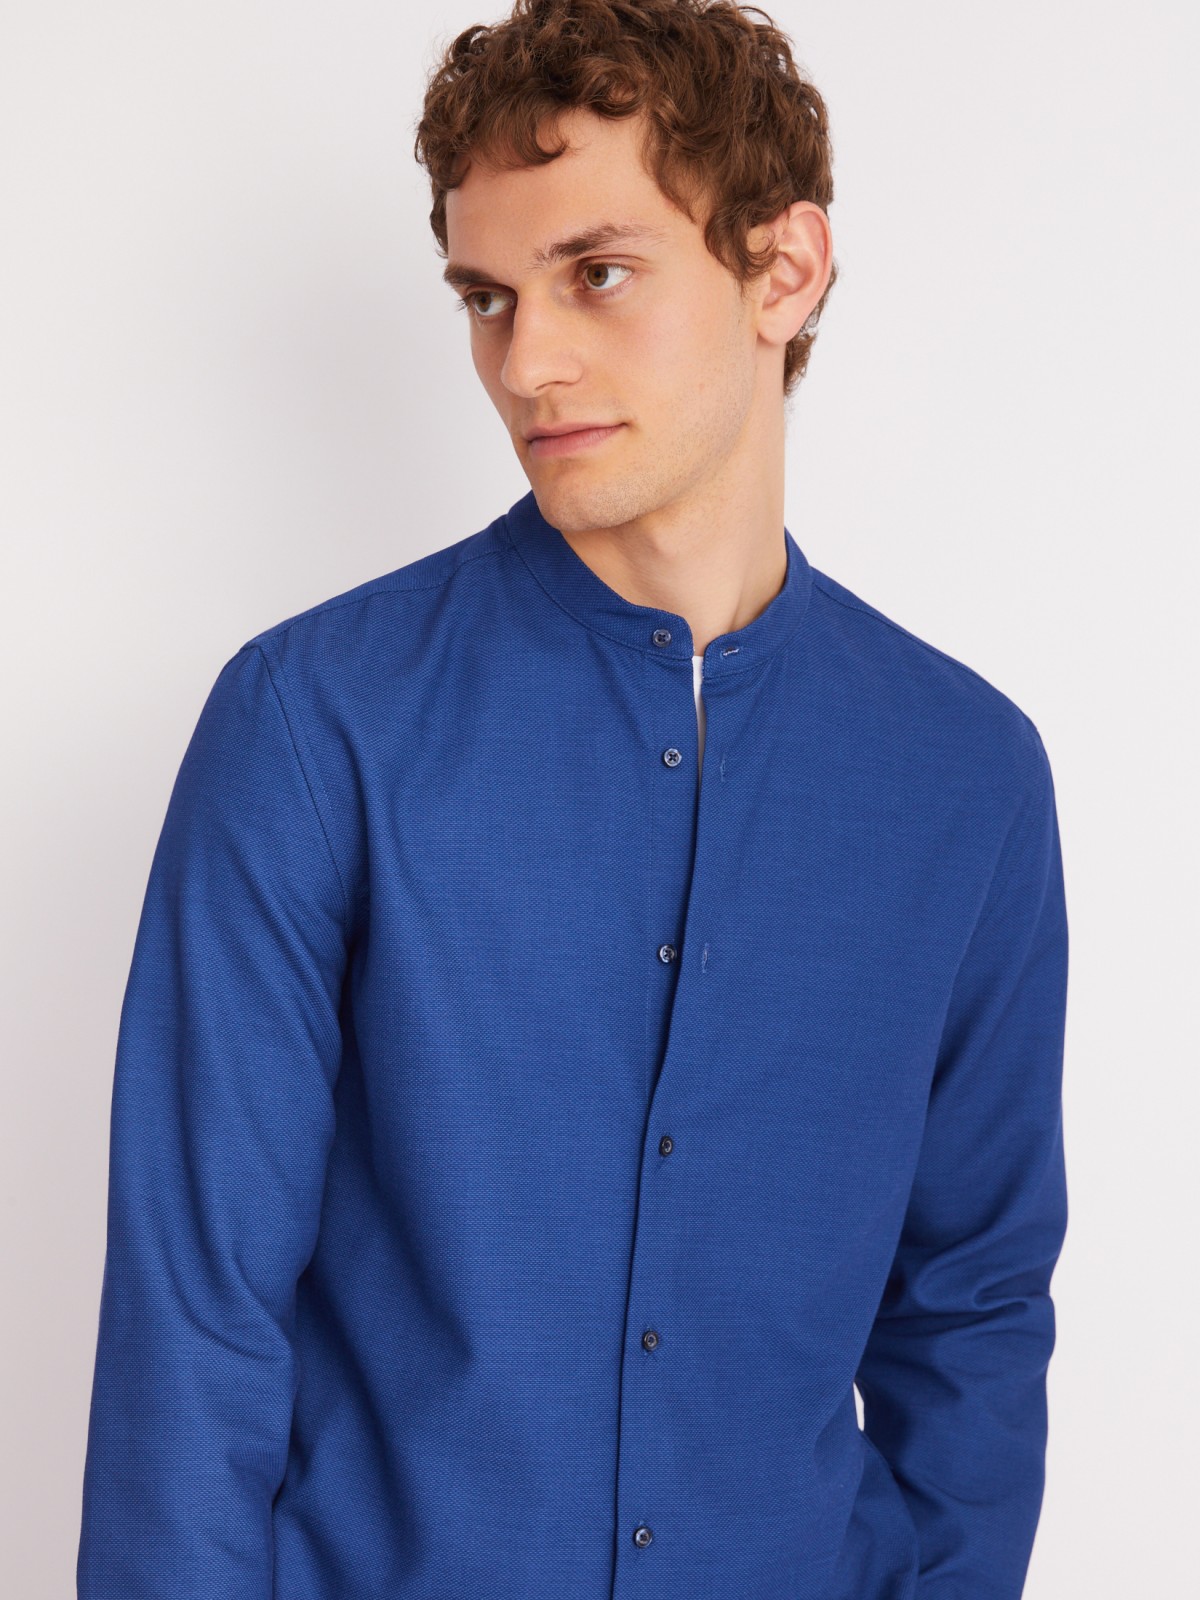 Офисная рубашка с воротником-стойкой и длинным рукавом zolla 013312159023, цвет голубой, размер M - фото 5